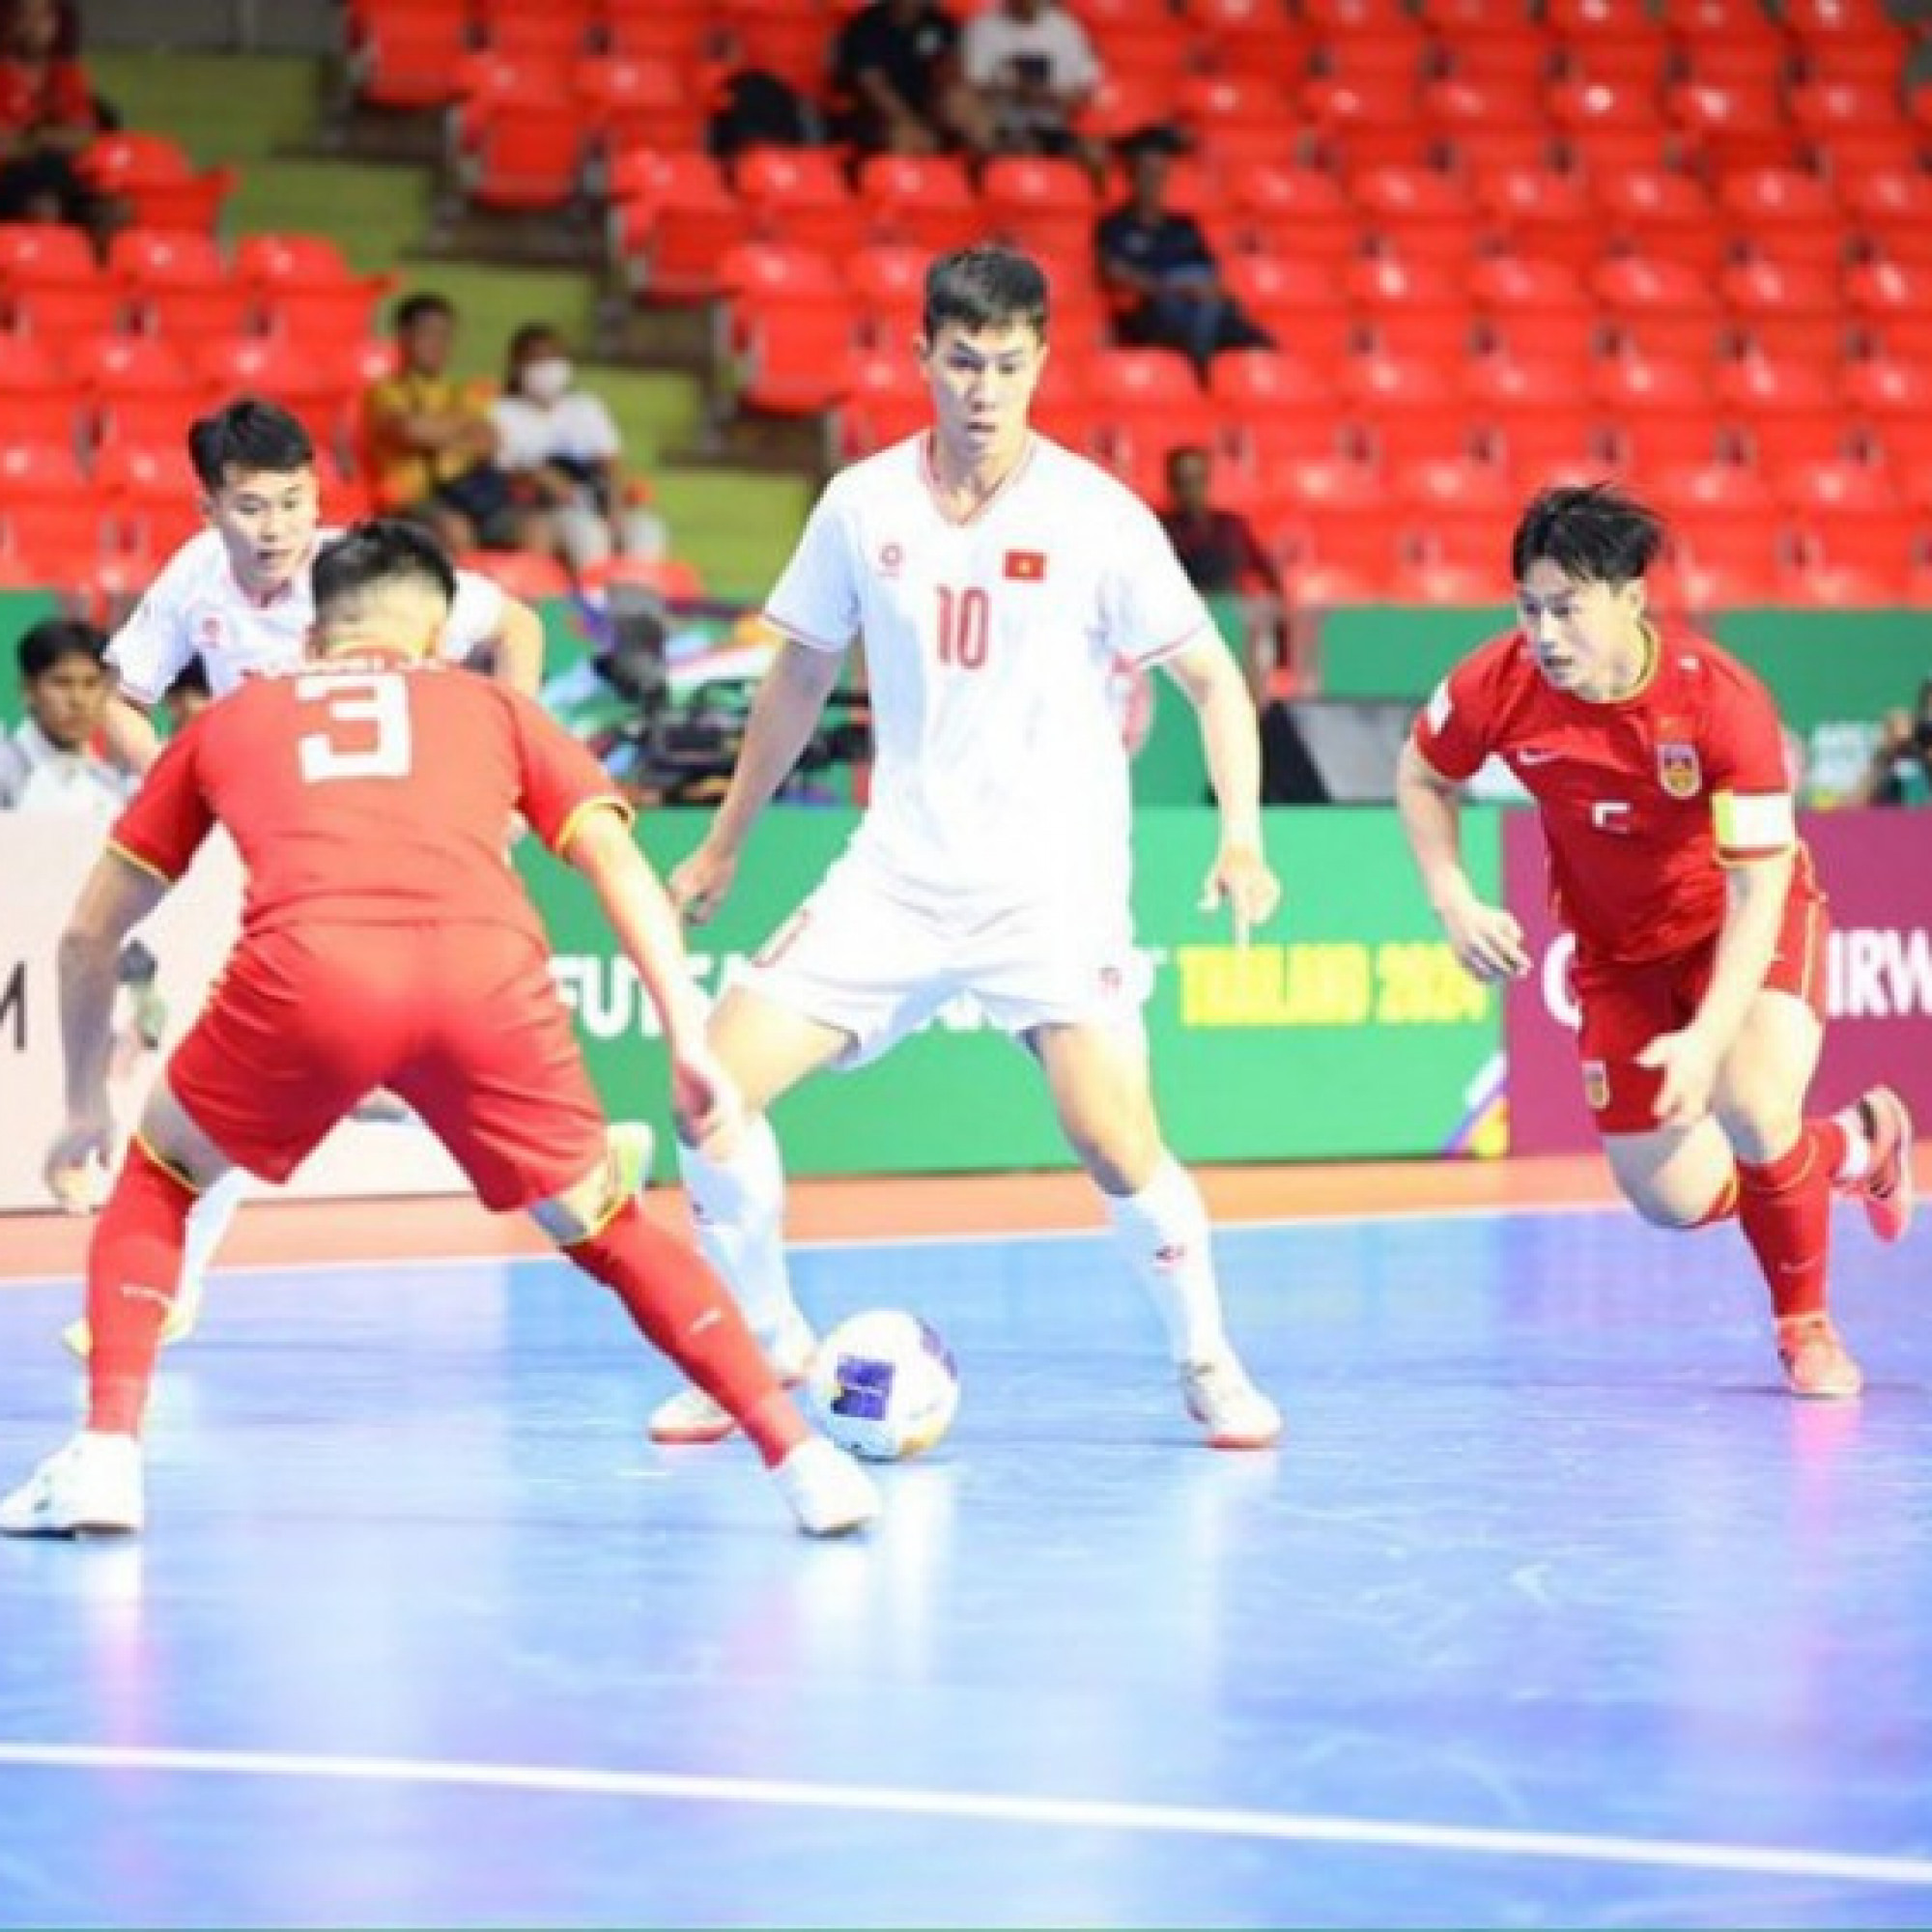  - Trực tiếp futsal ĐT Việt Nam - ĐT Trung Quốc: Gia Hưng mở tỷ số từ cú sút 10m (Futsal châu Á)